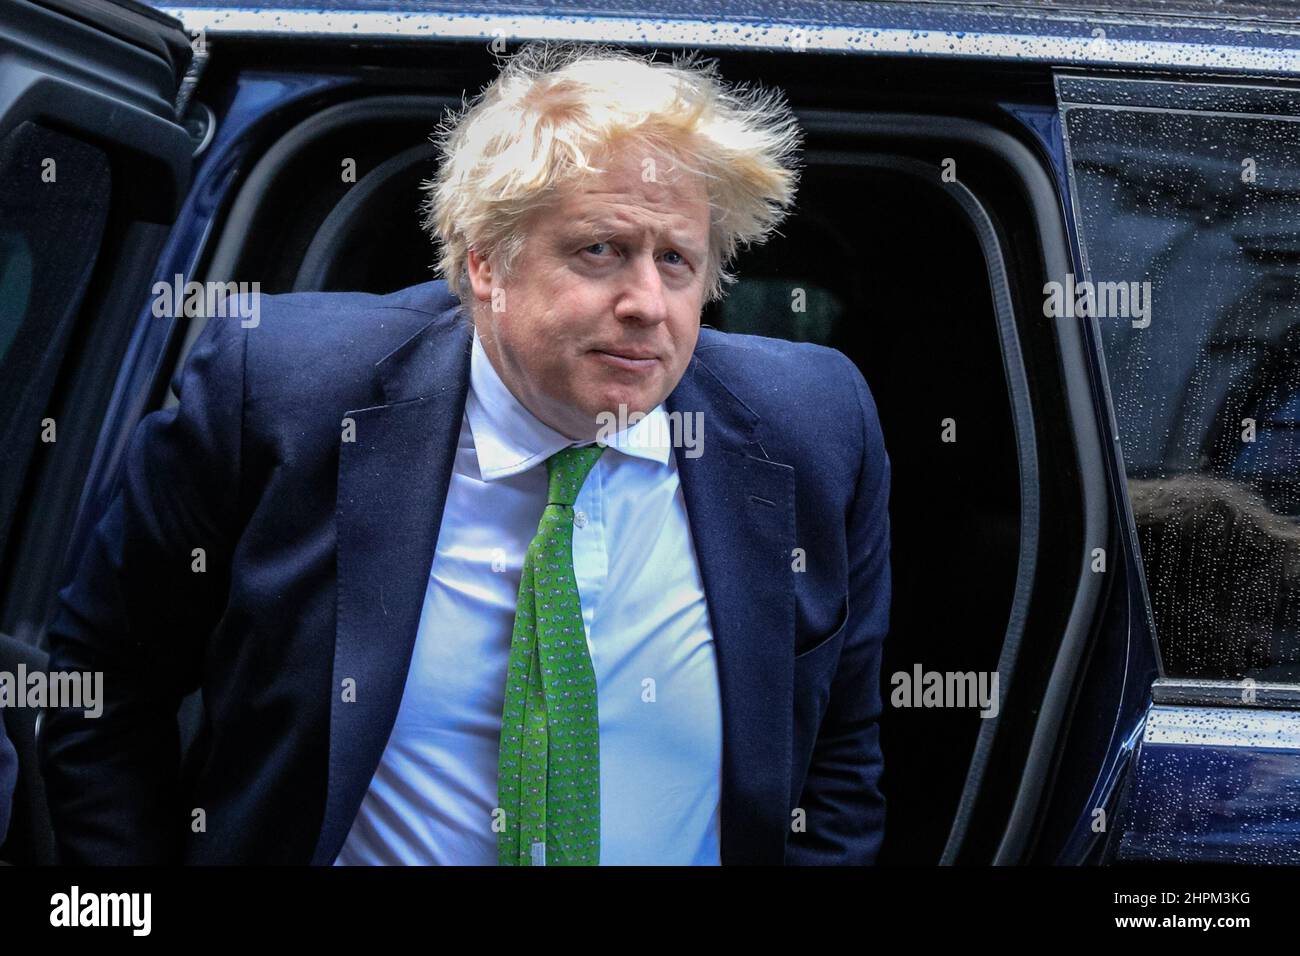 Londres, Reino Unido. 22nd Feb, 2022. El primer ministro británico Boris Johnson regresa a Downing Street en un día ocupado en la política internacional con la situación en Ucrania bajo constante revisión. Crédito: Imageplotter/Alamy Live News Foto de stock